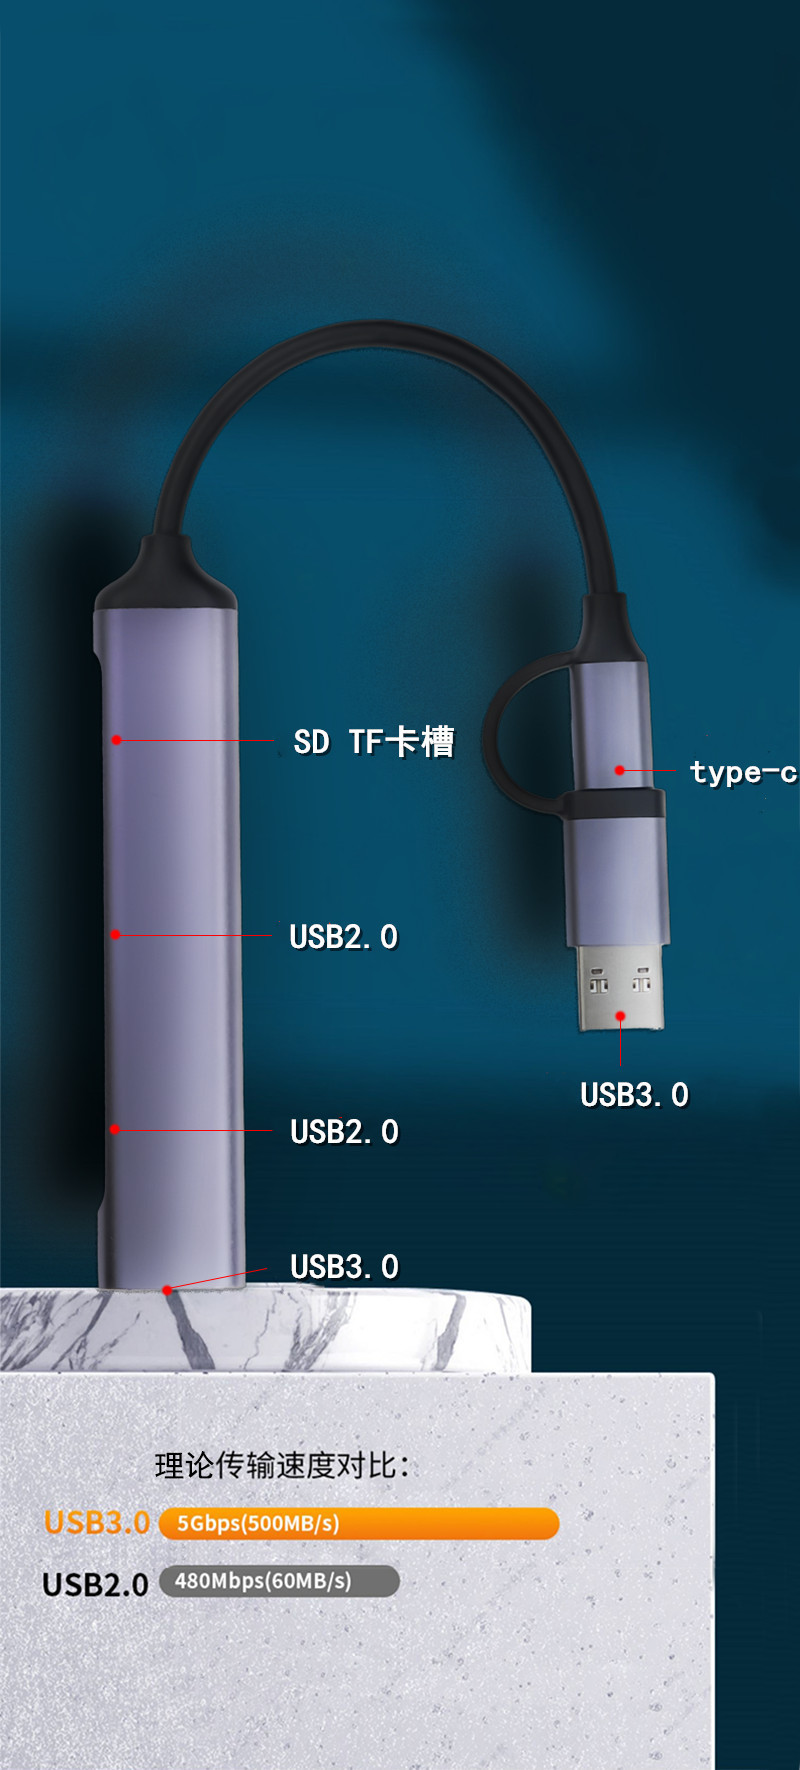 CÁP CHUYỂN ĐỔI  TYPE C Và USB 3.0- RA CỔNG USB3.0+SD/TF Đầu đọc thẻ nhớ type C